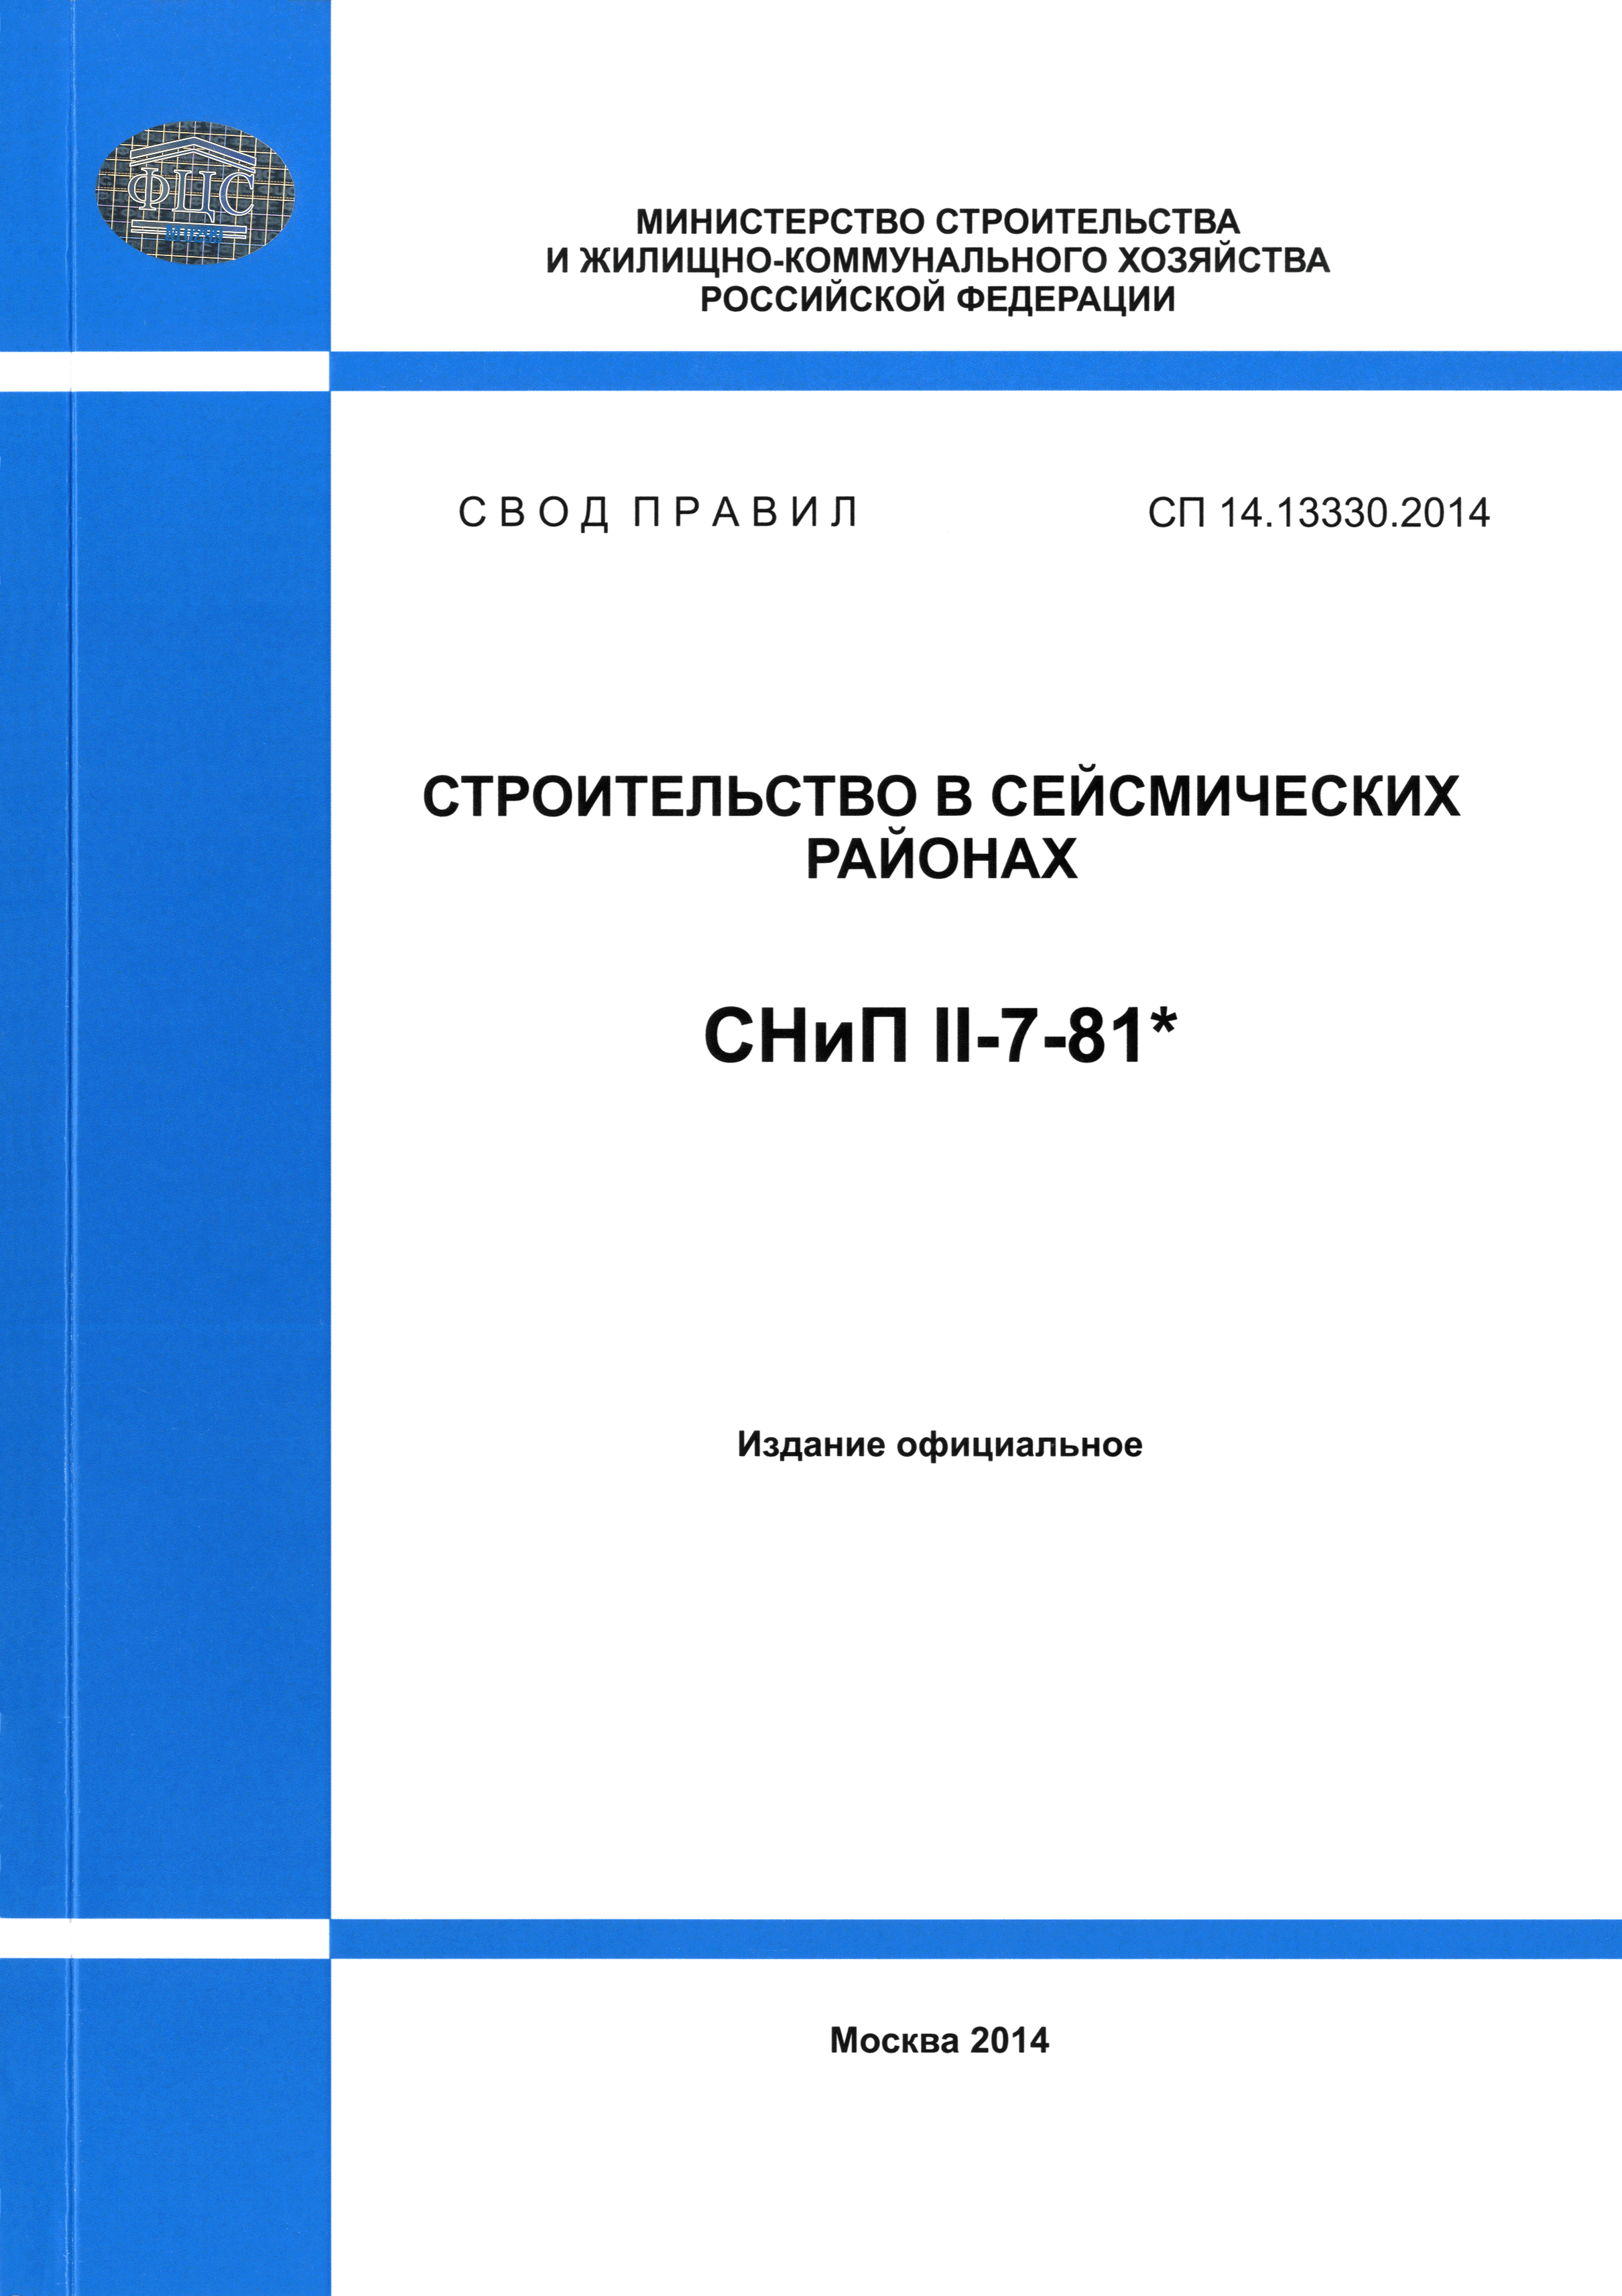 СП 14.13330.2014